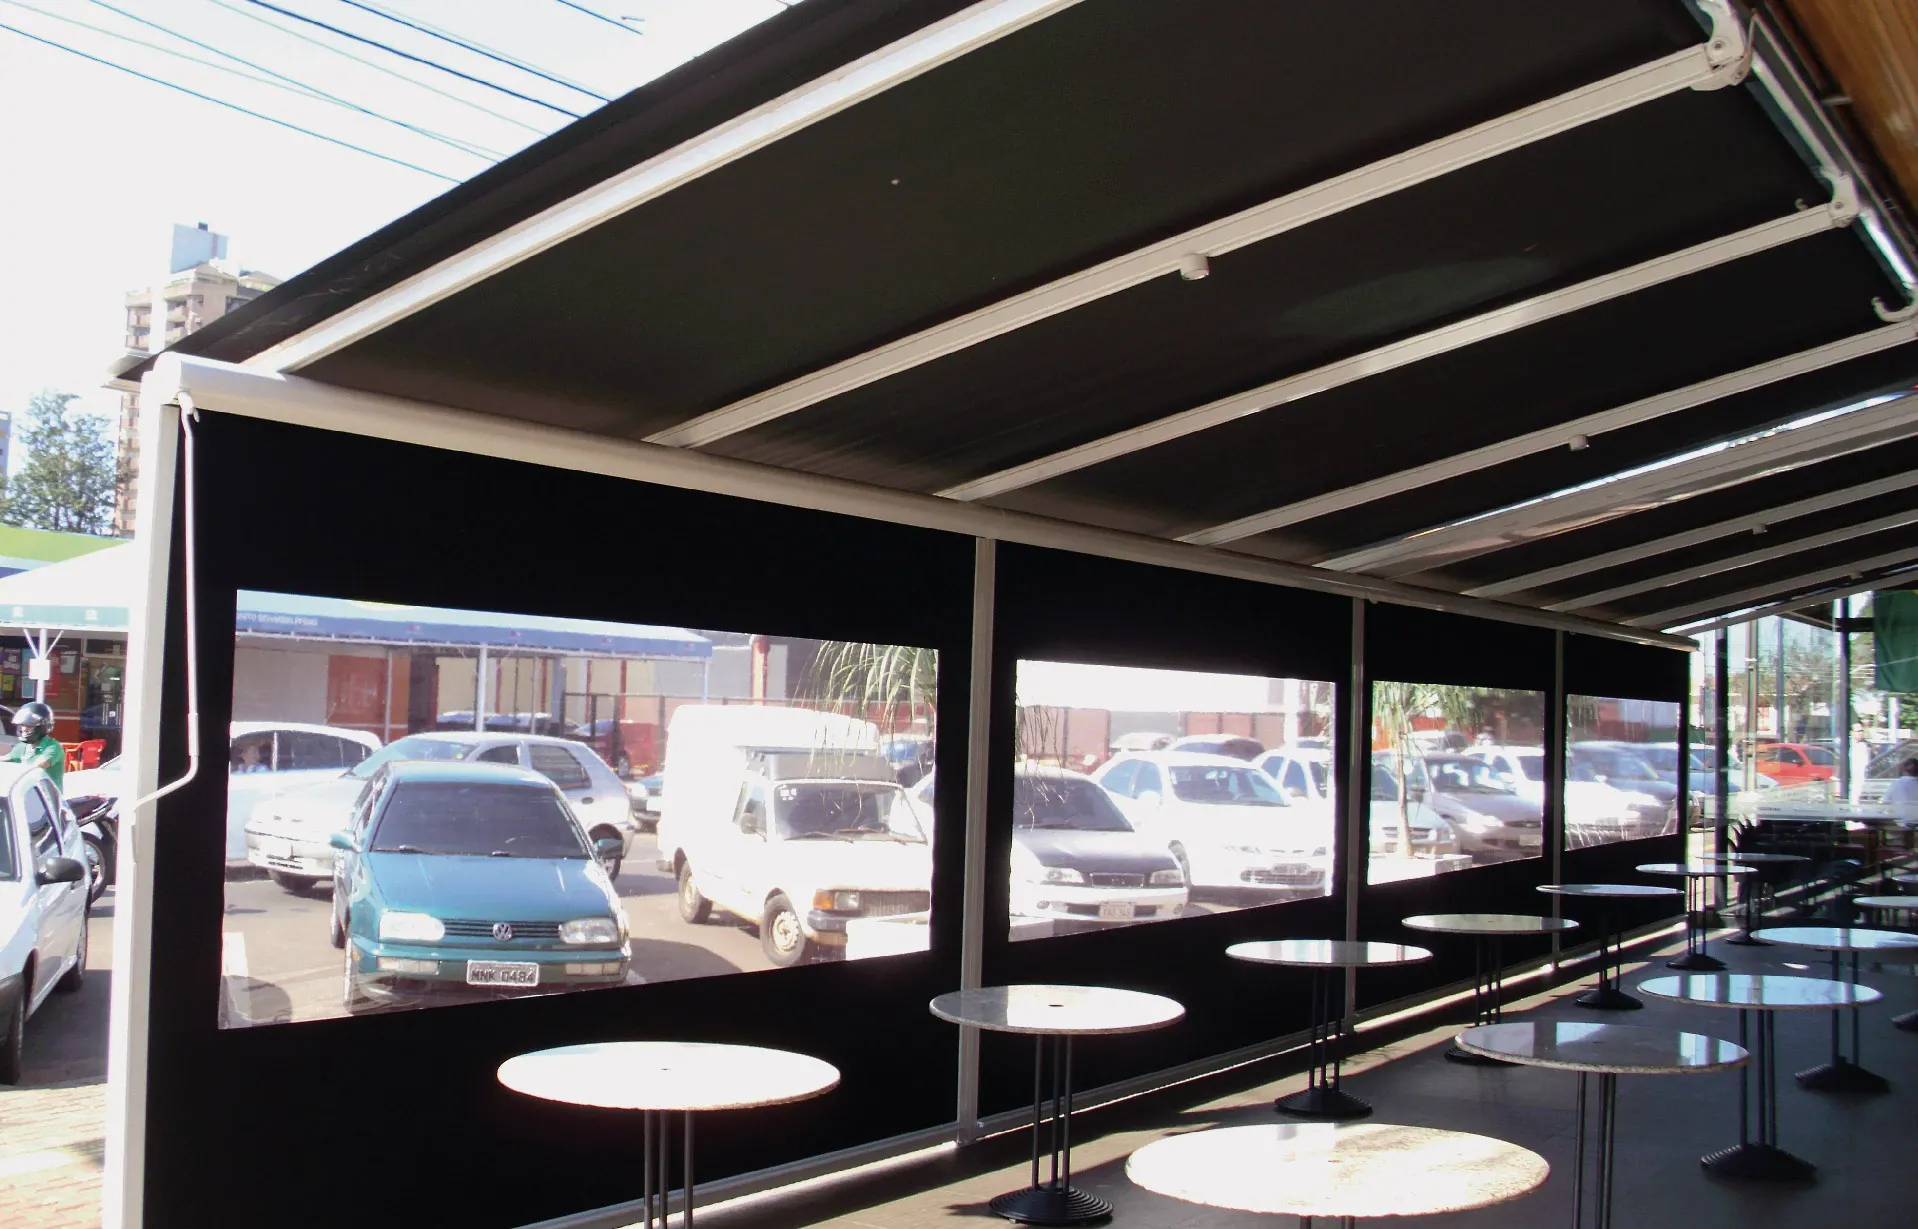 Extiende tus espacios exteriores en comercios, restaurantes, y más. El pergolato de Gabín es práctico y funcional.